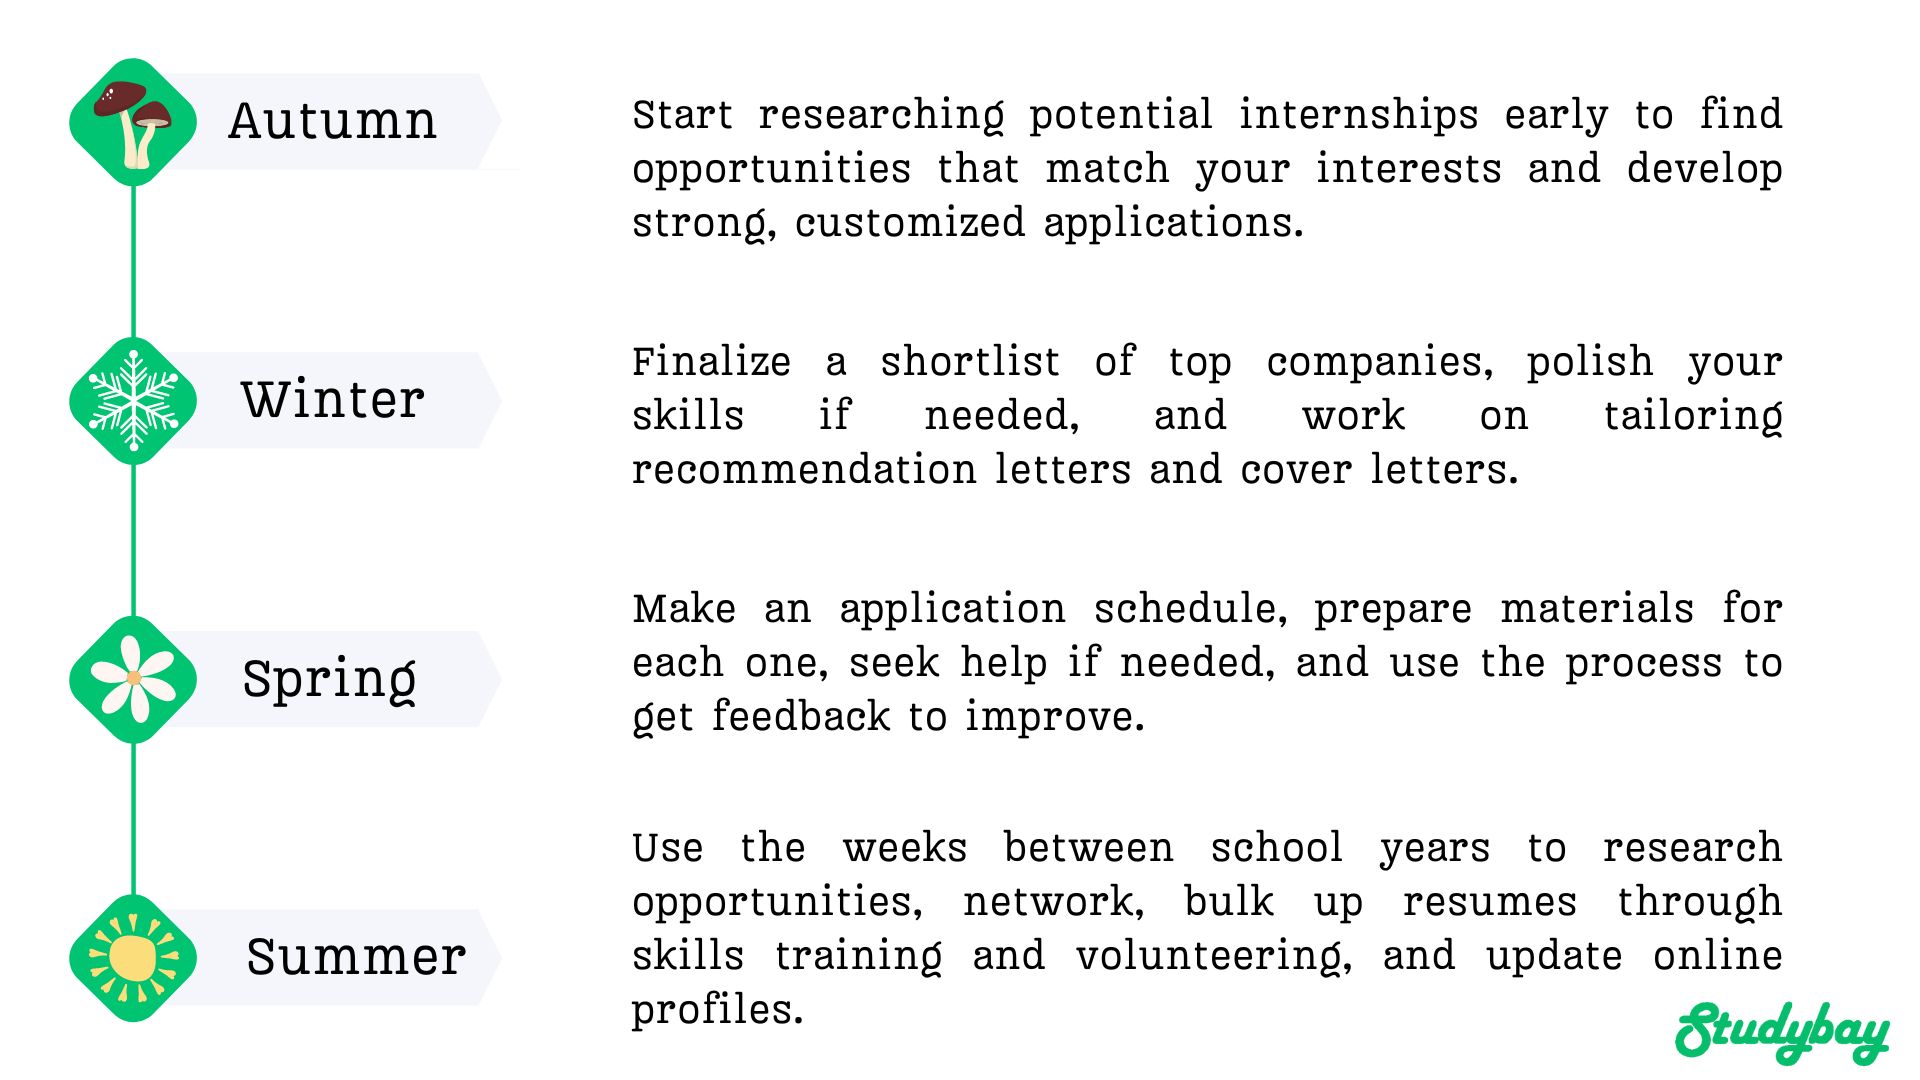 Application timeline for summer internship